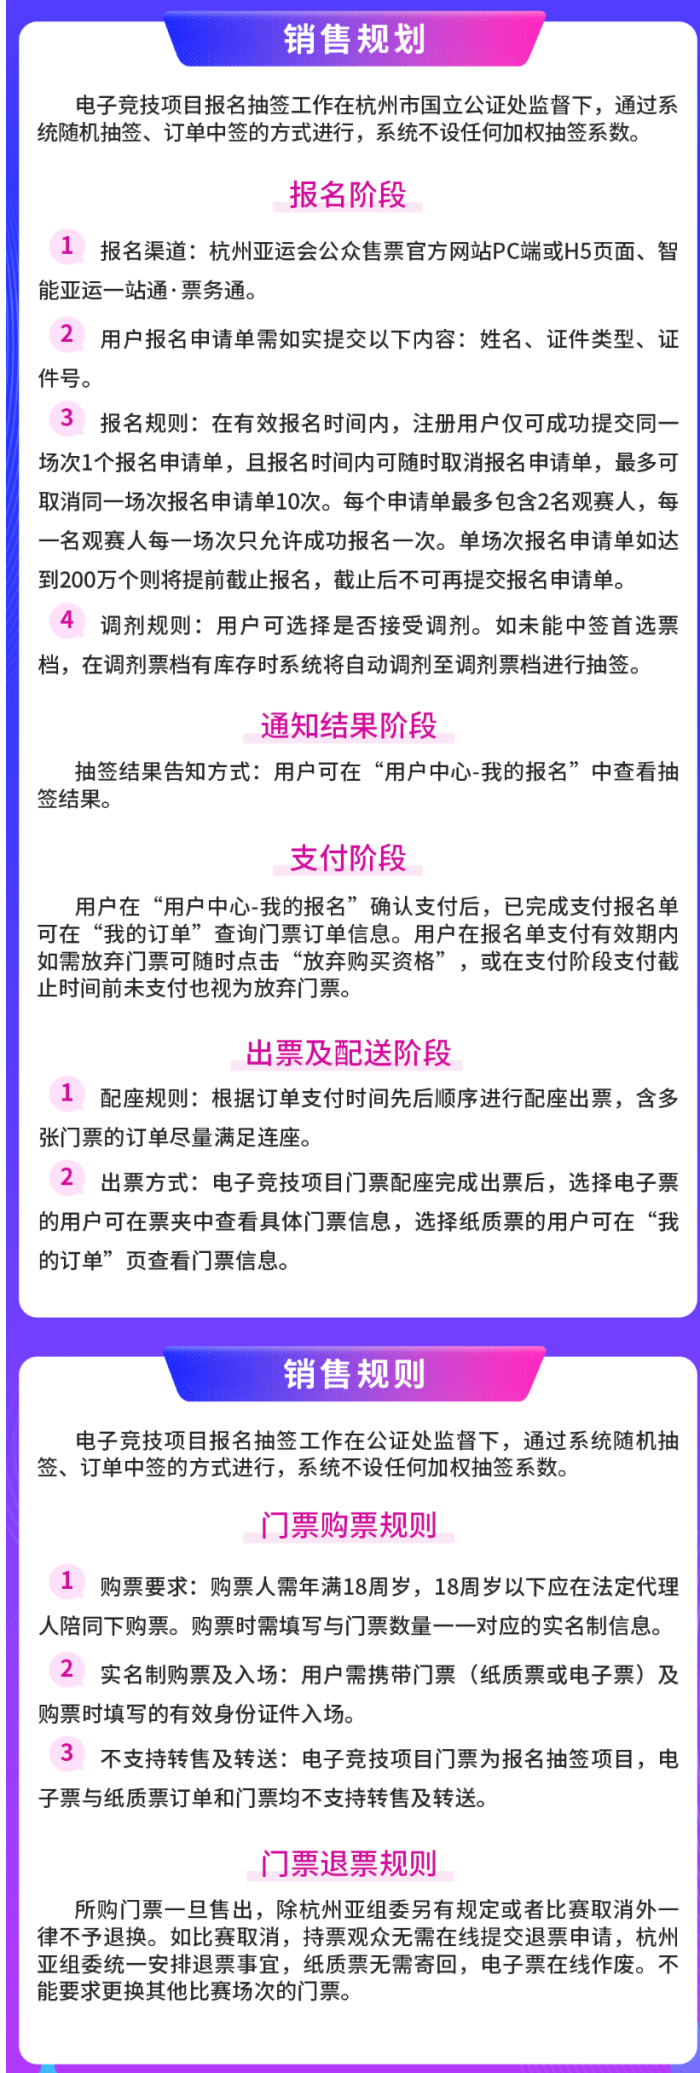 杭州亚运会电子竞技门票 8 月 14 日开售：以报名抽签、中签支付形式，分 4 批次启动报名